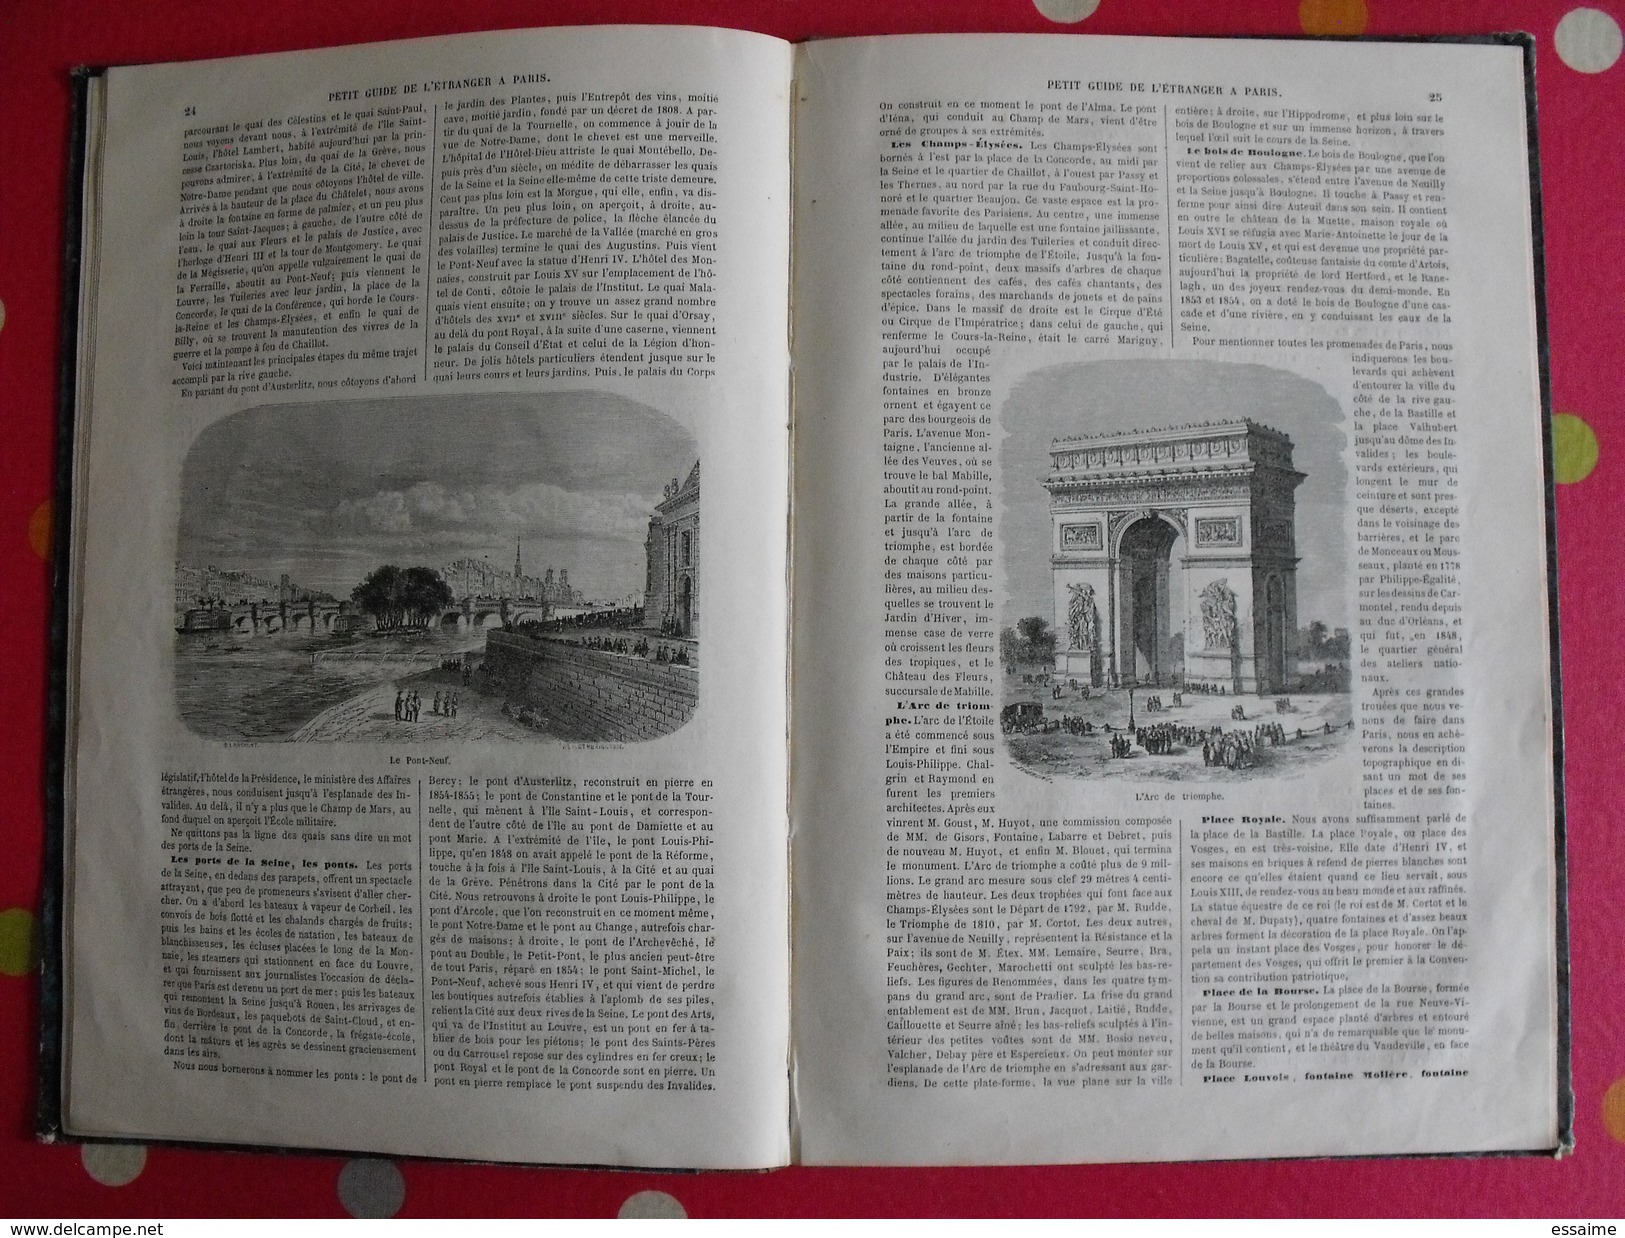 petit guide de l'étranger à Paris. Frédéric Bernard. 1855. 40 vignettes Lancelot Bhérond. Hachette + plan